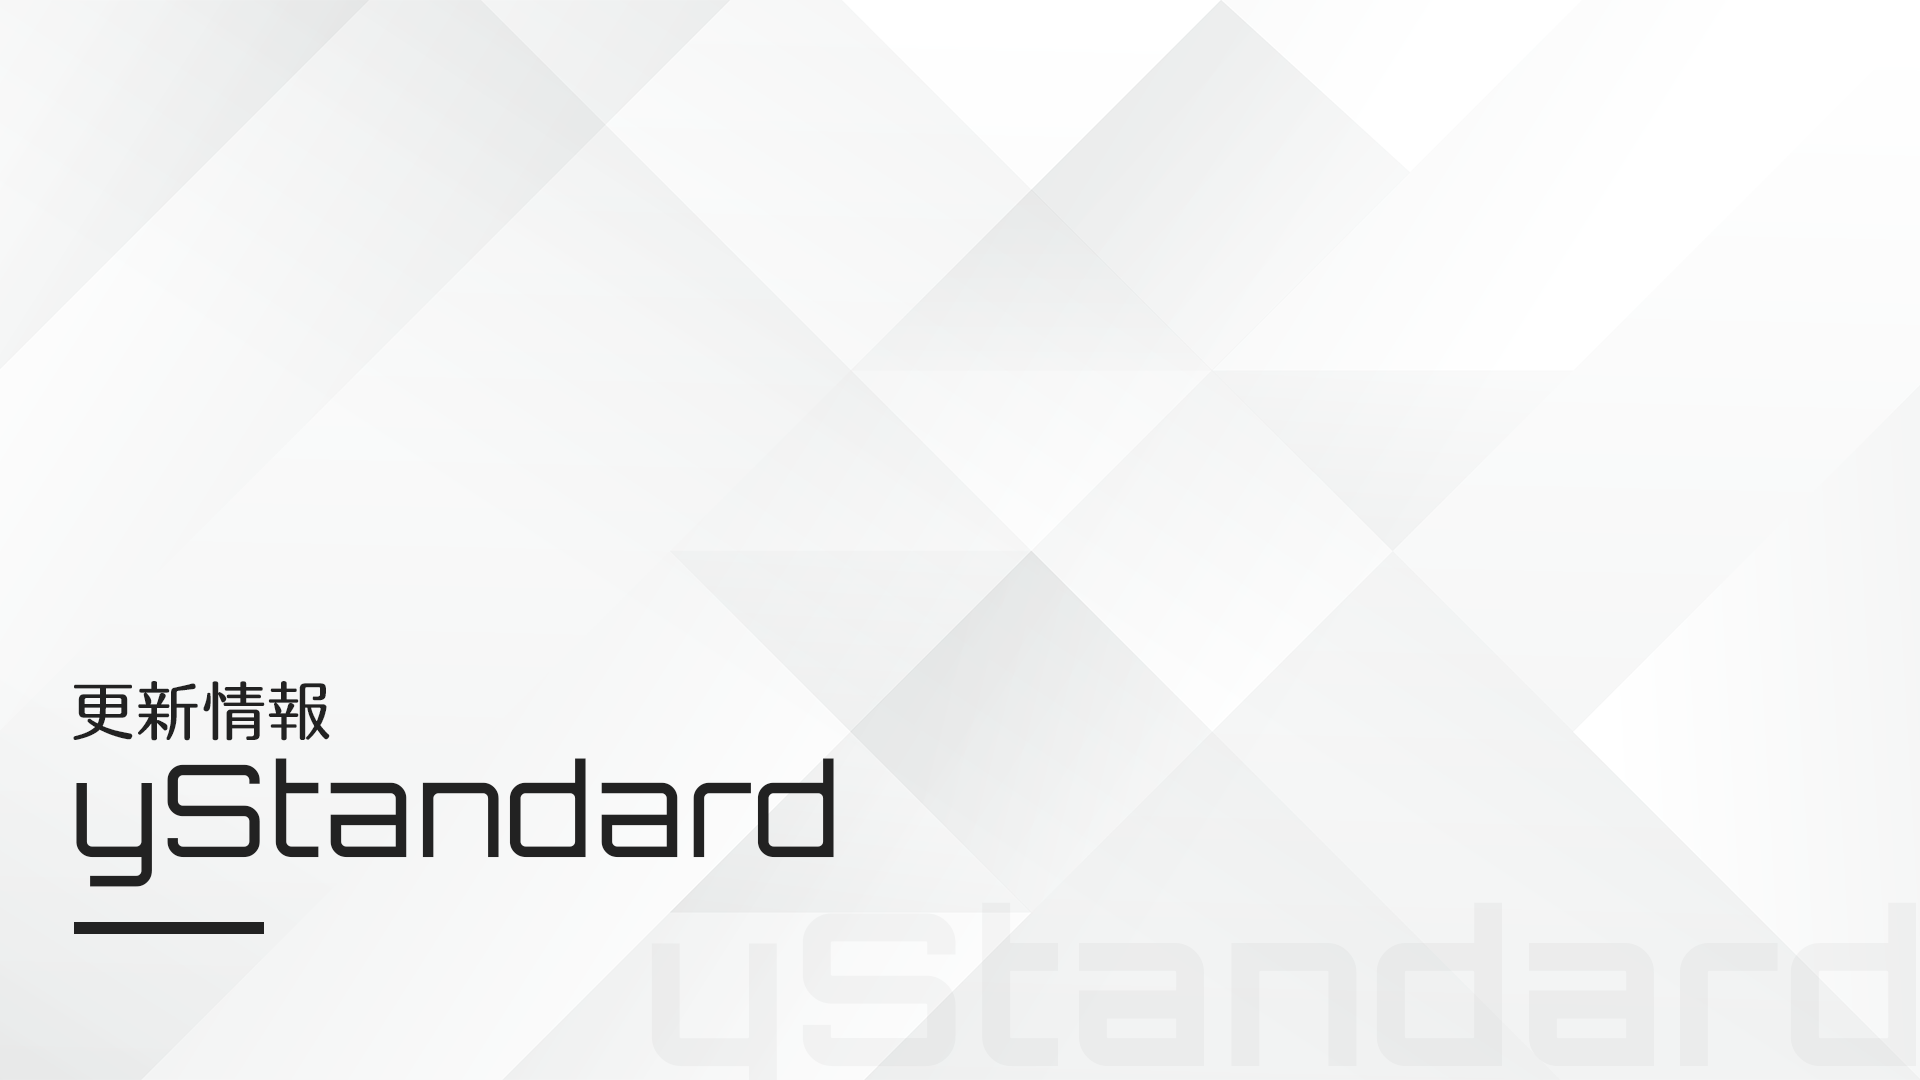 【yStandard v4.39.0】ブログカードショートコード機能の不具合修正と機能調整